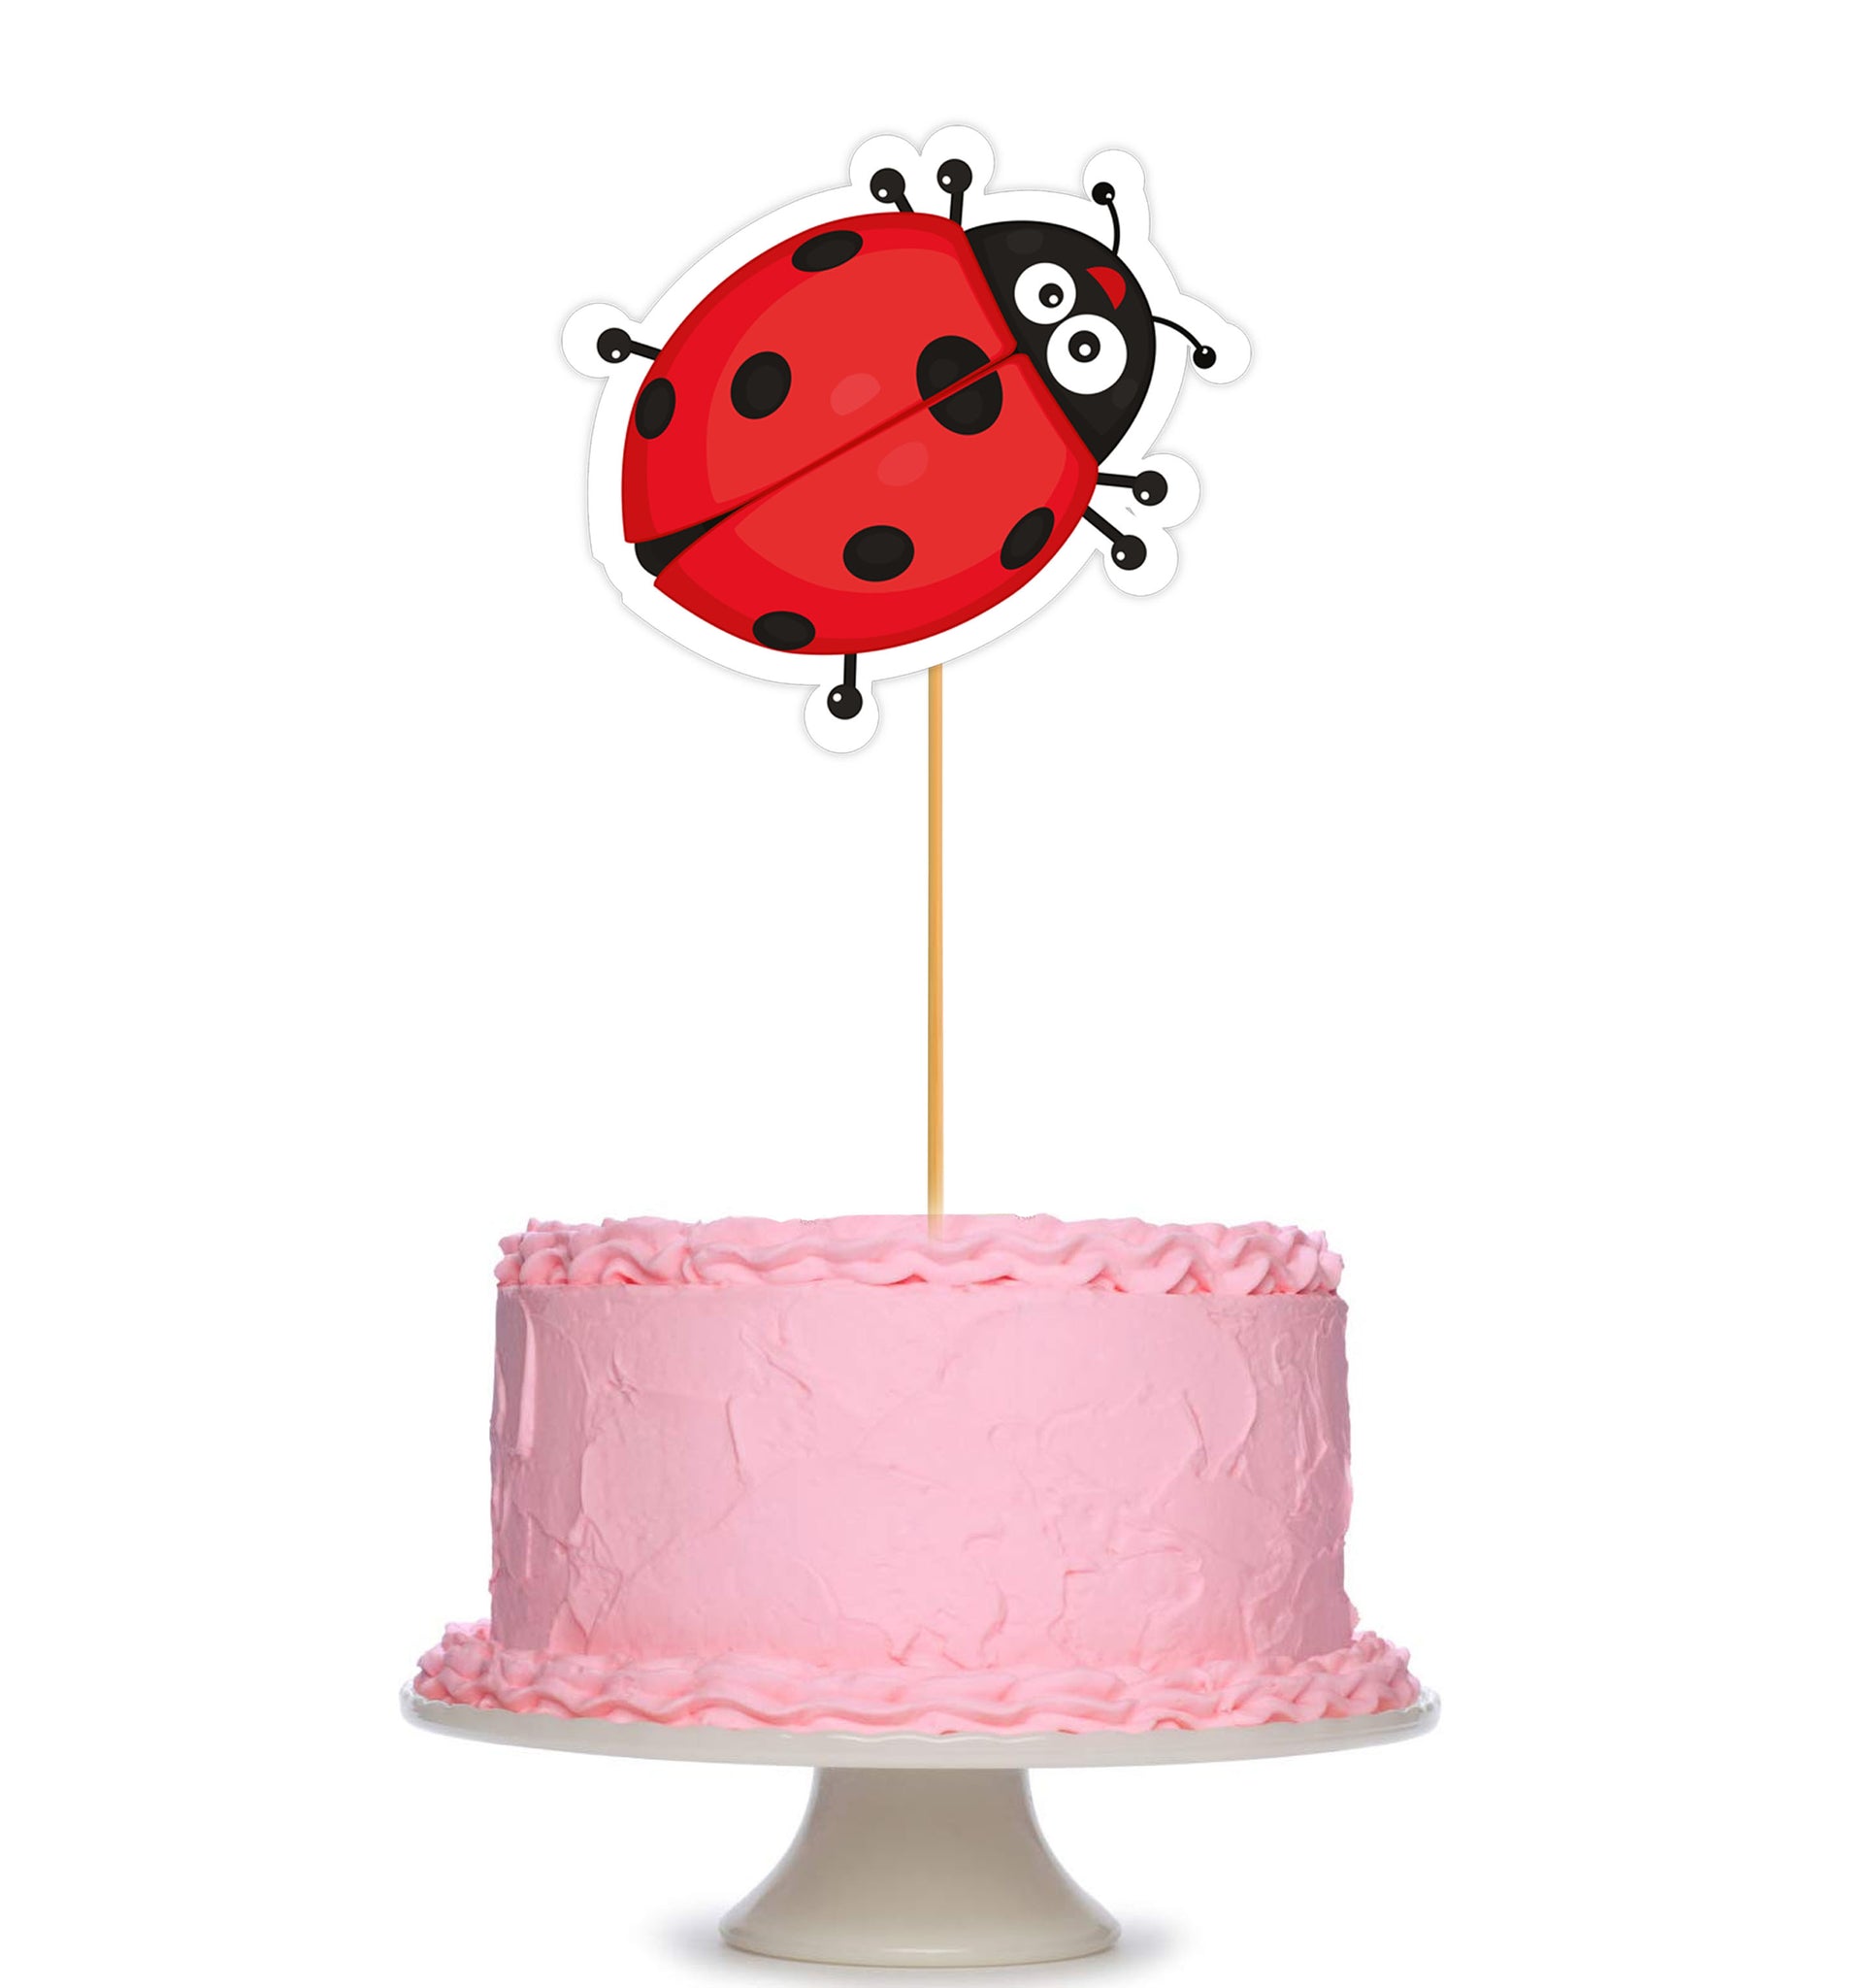 Pin by KATINA VAUISO on birthday | Bug cake, Bug birthday cakes, Cake